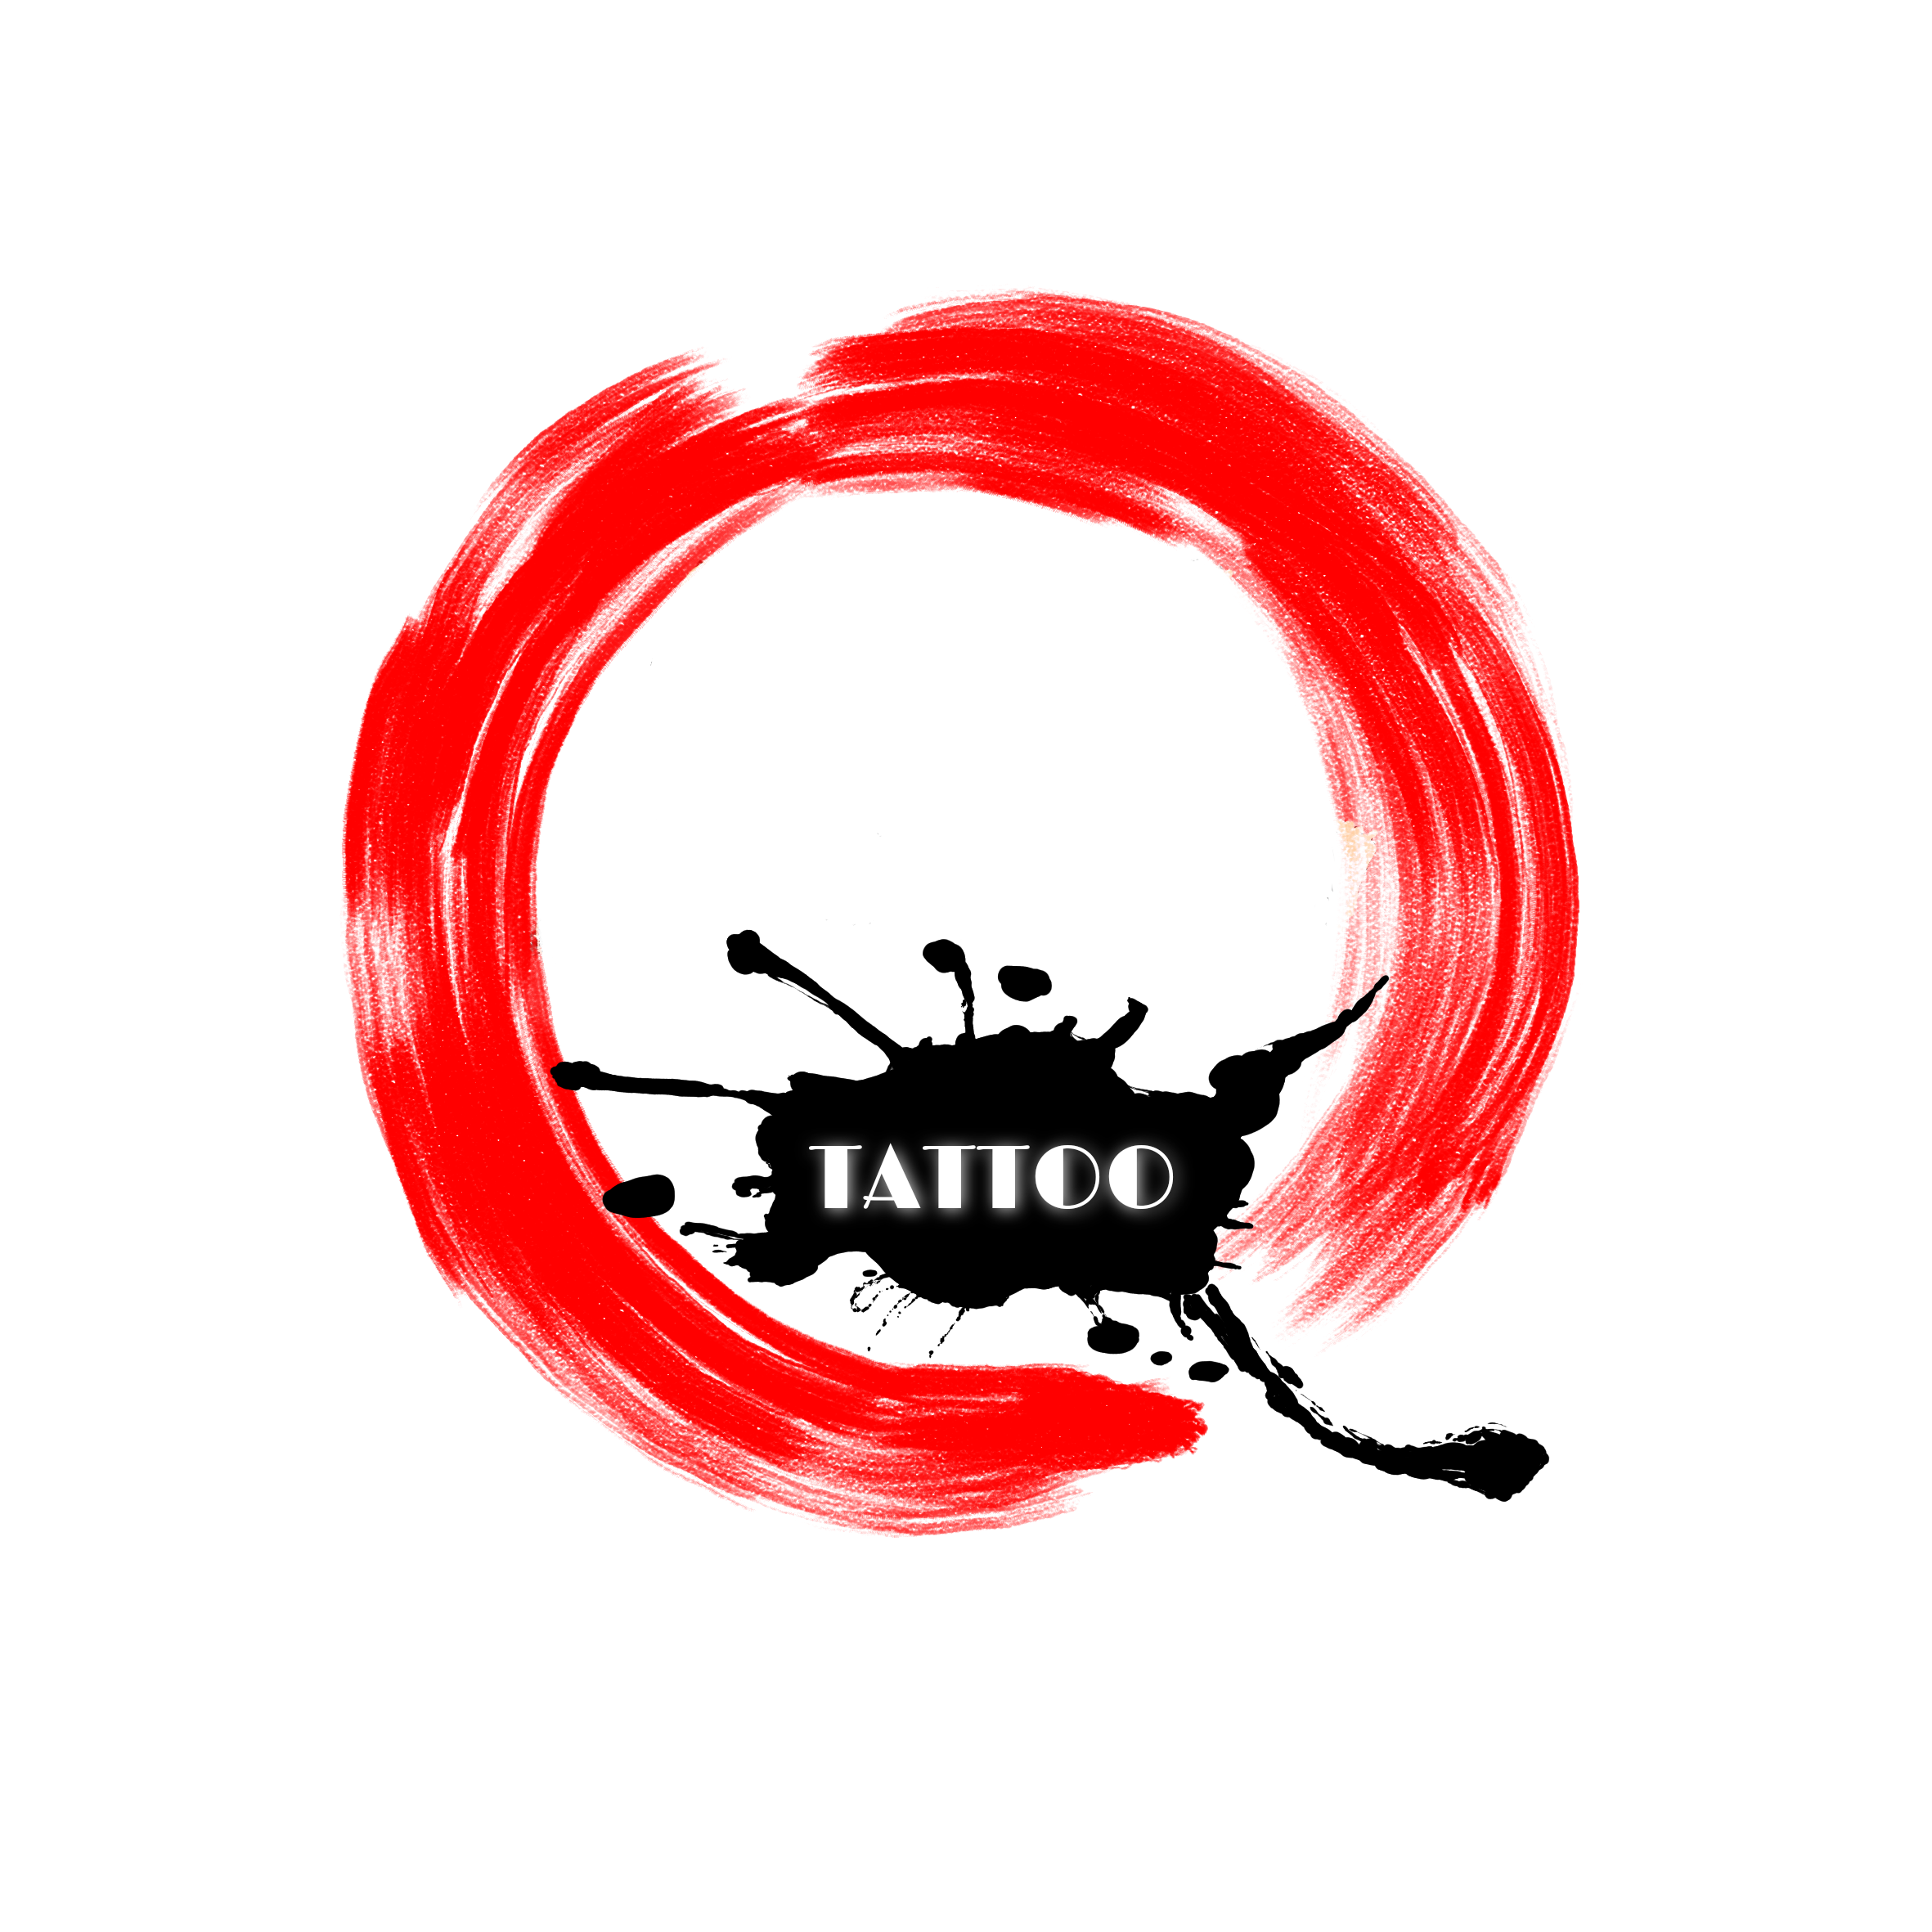 L.A. Tattoo